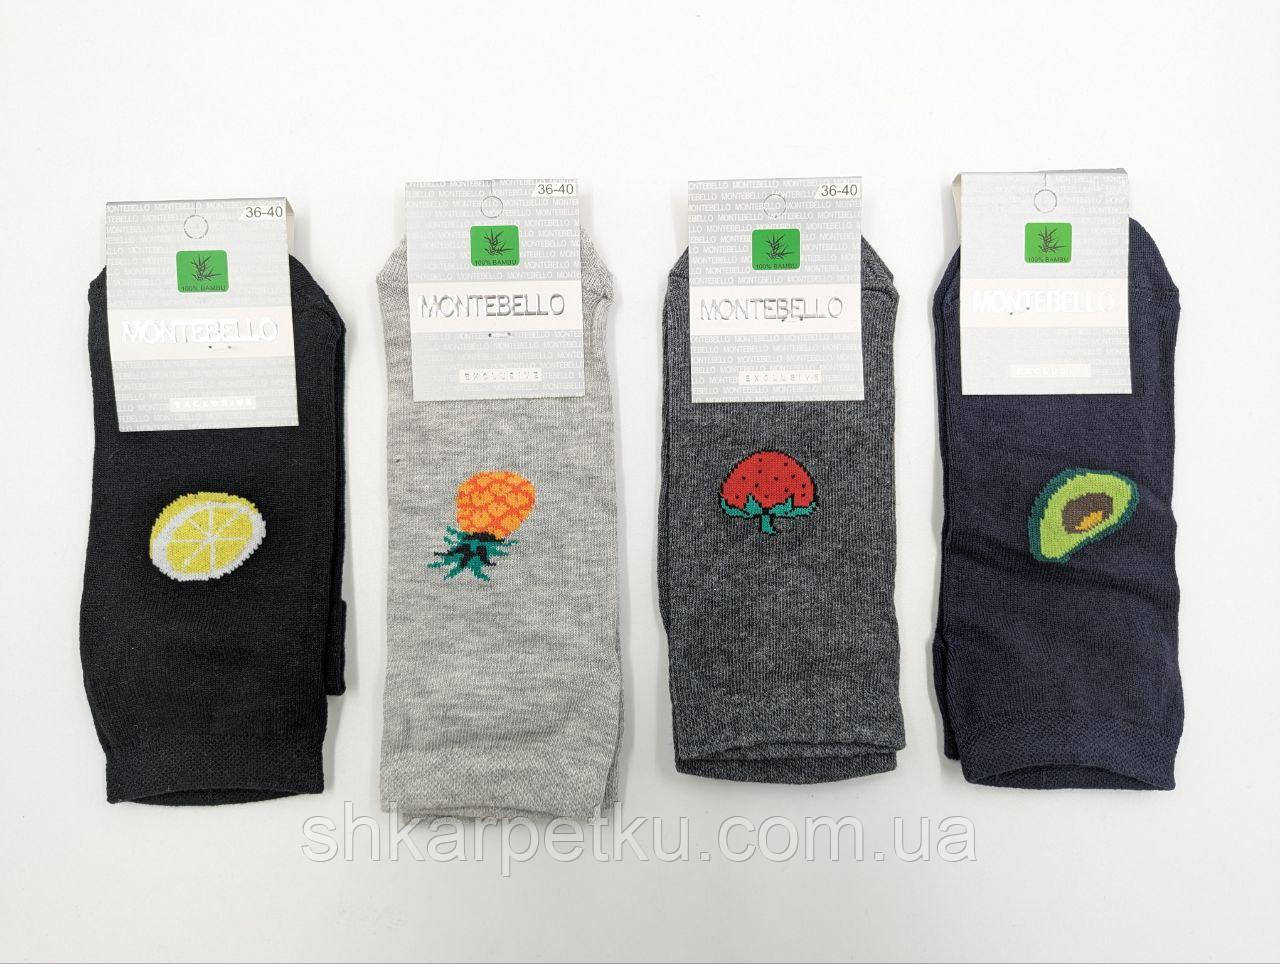 Жіночі демісезонні шкарпетки Montebello асорті кольорів c фруктами бавовна короткі 36-40 12 пар/уп